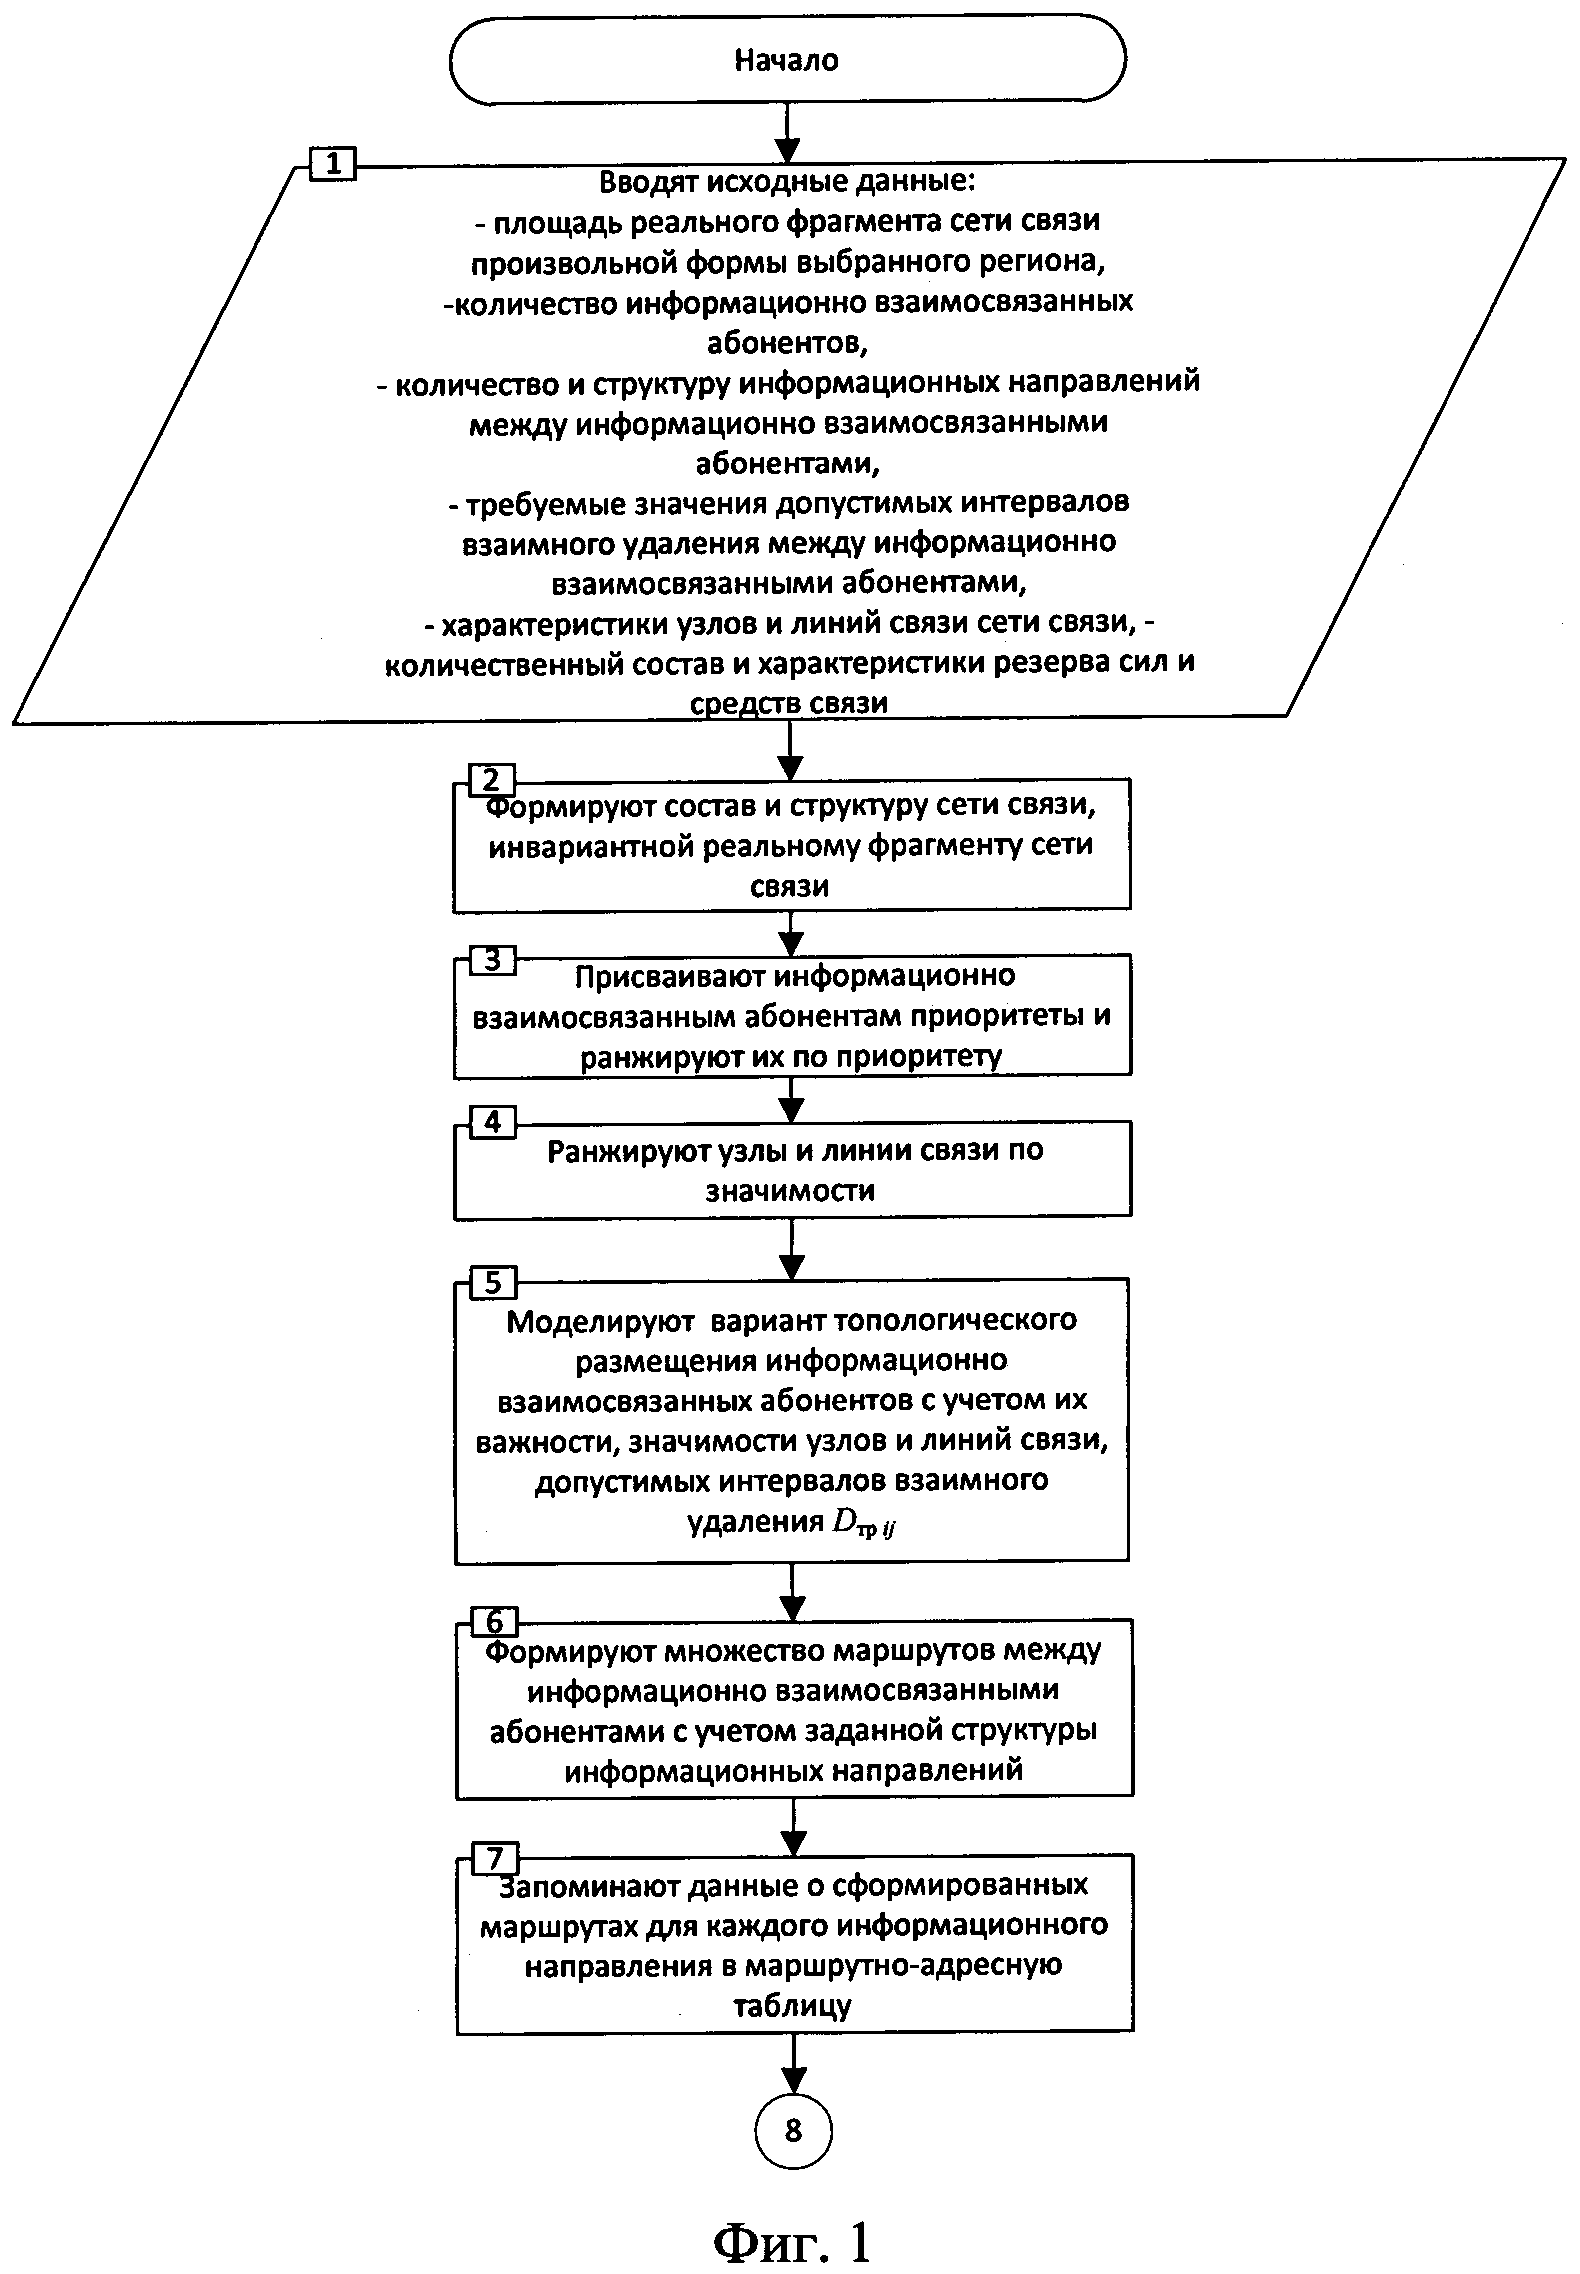 Способ моделирования оптимального варианта топологического размещения множества информационно взаимосвязанных абонентов на заданном фрагменте сети связи общего пользования